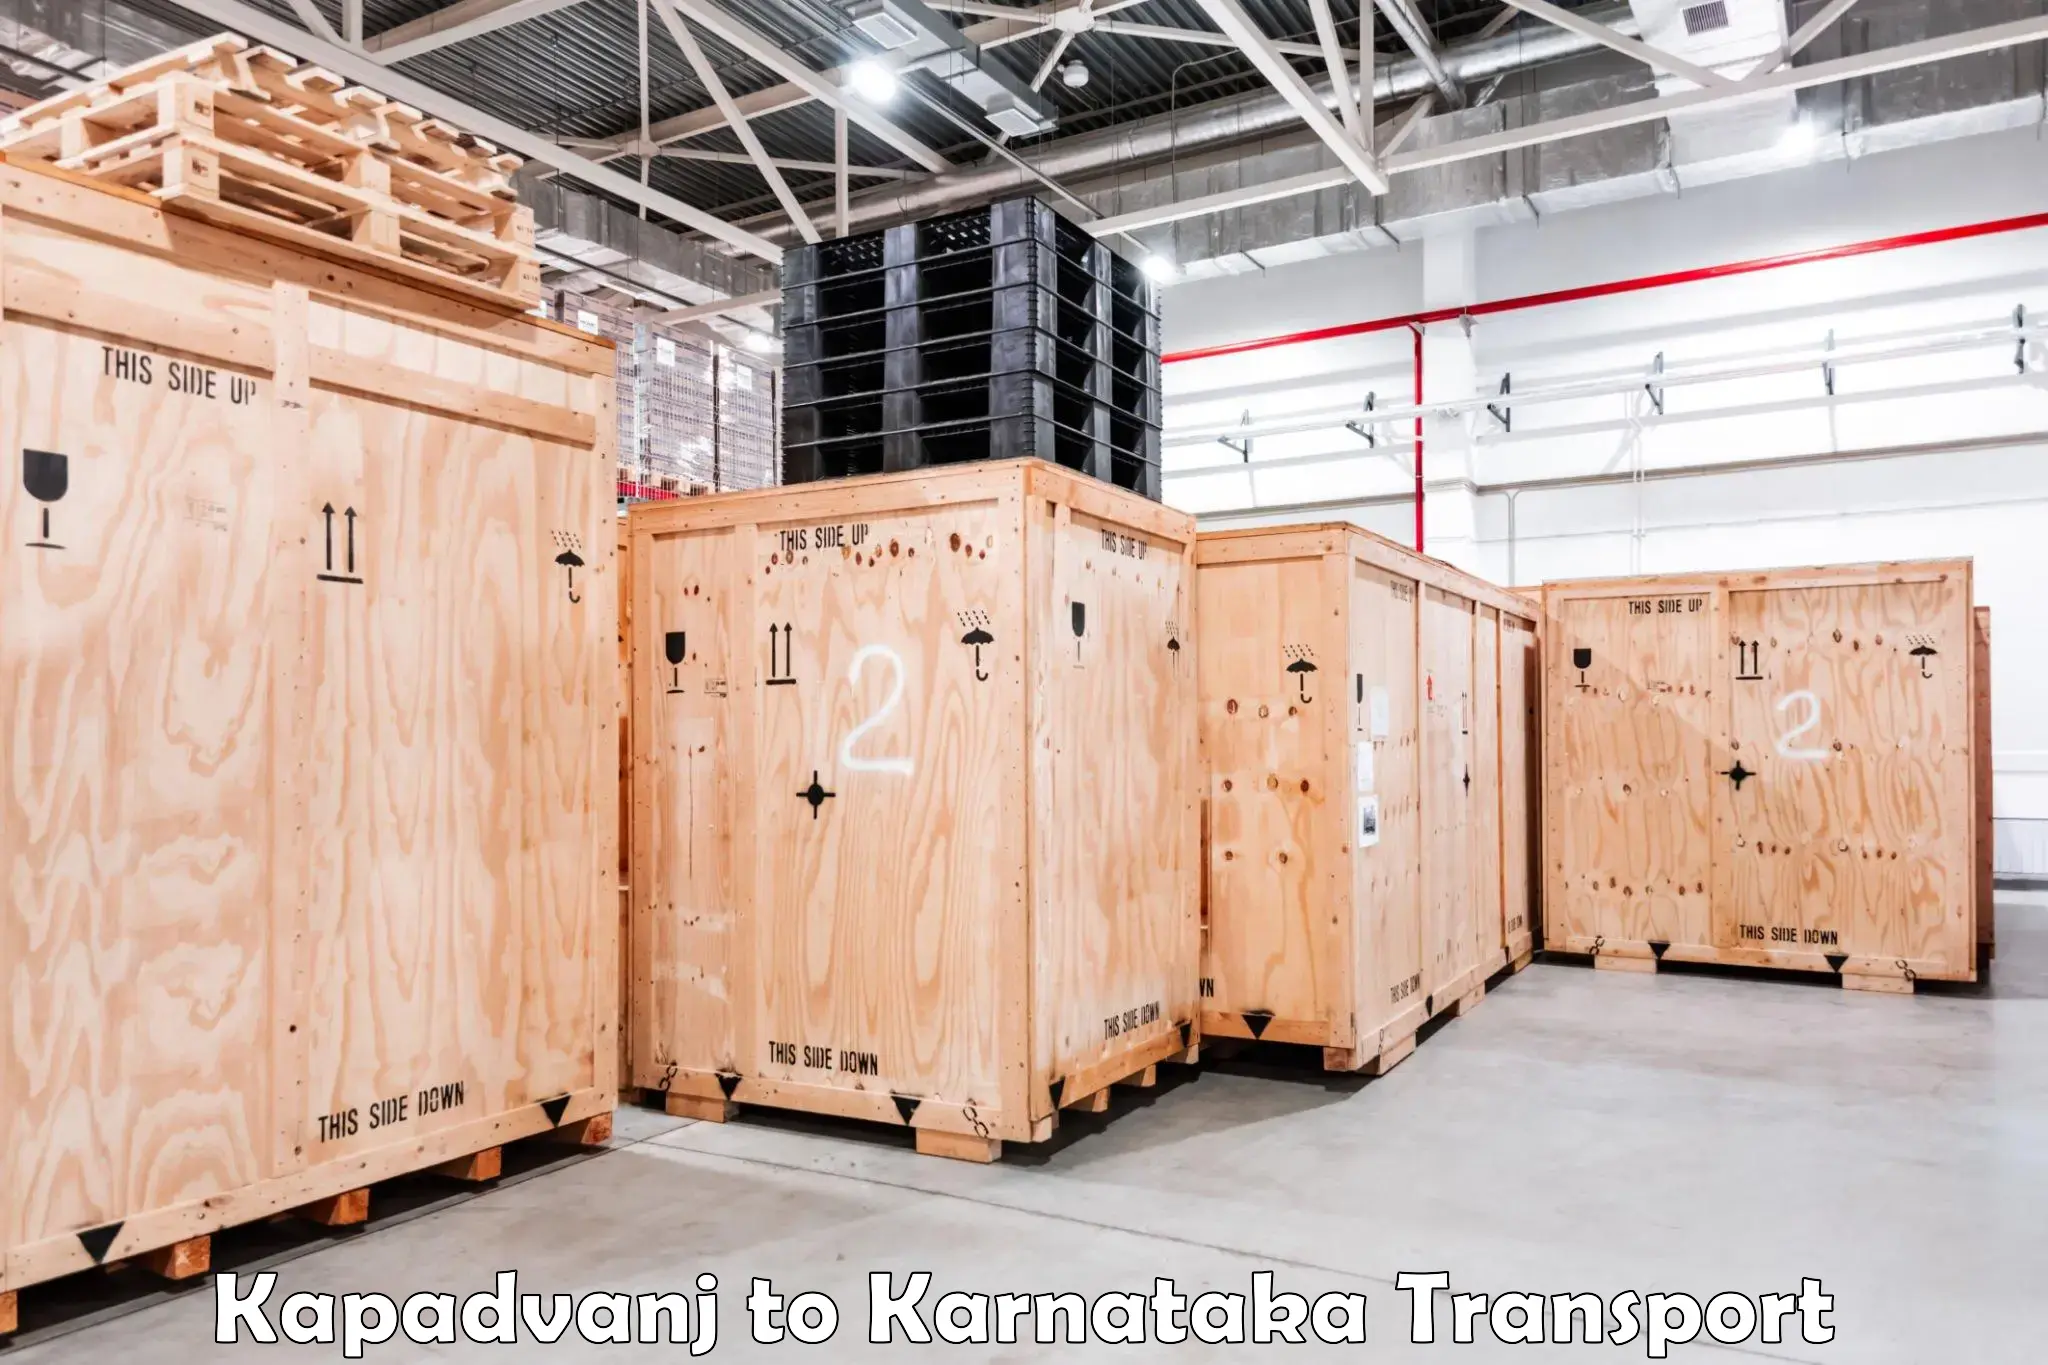 Daily parcel service transport Kapadvanj to Khanapur Karnataka